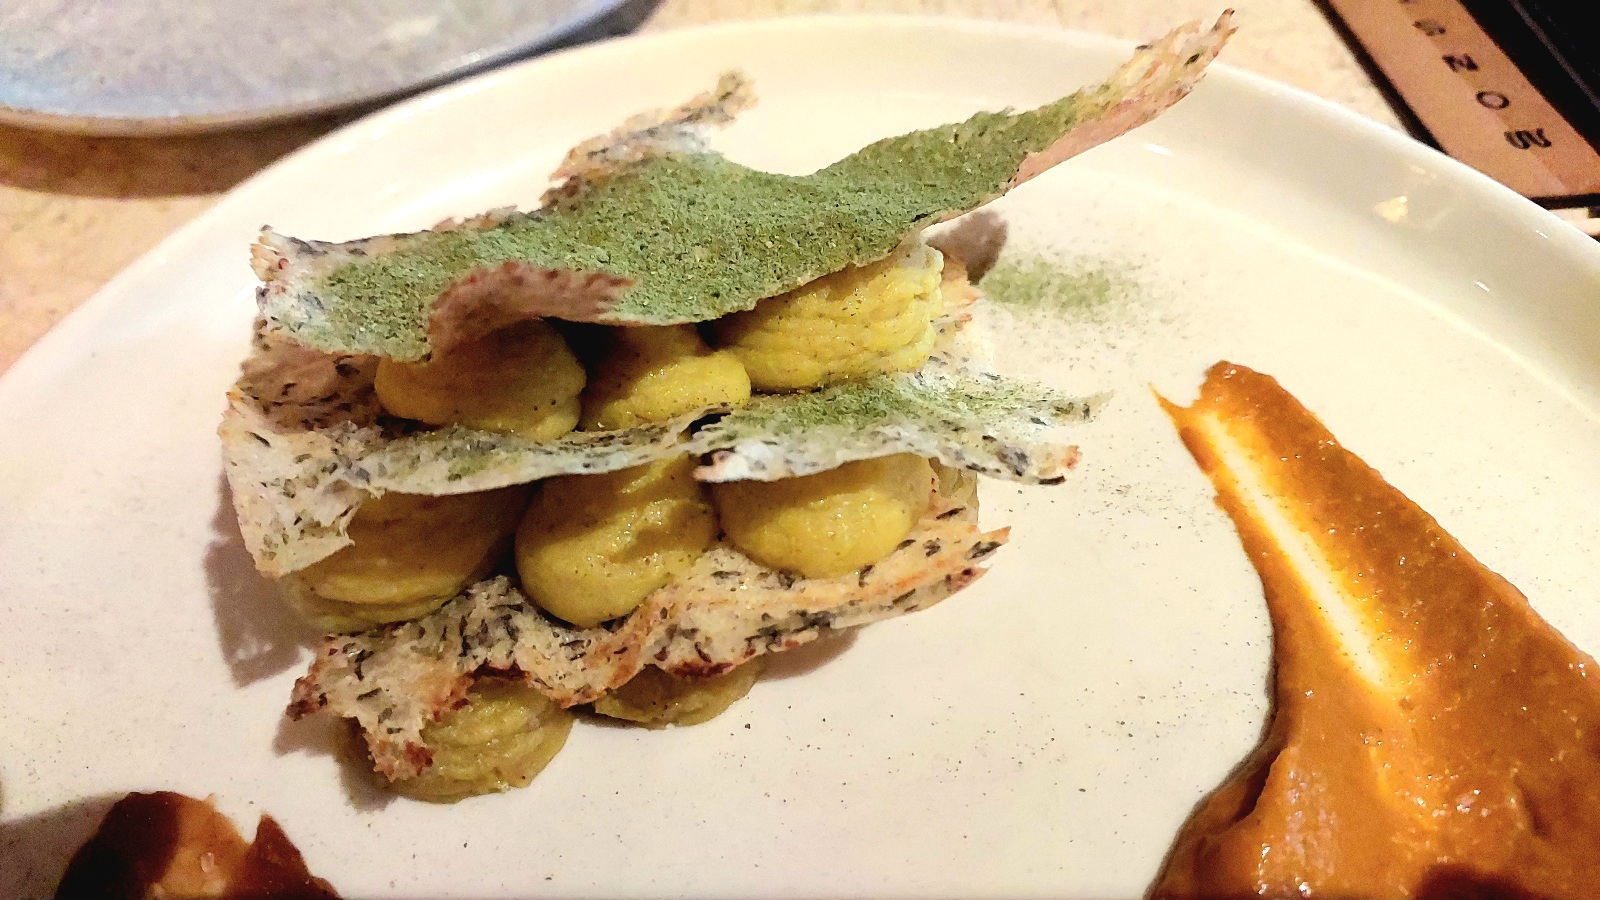 Crispy Dosa - Potato Masala, Vegan ' Shrimp' Relish, Tamarind Chutney